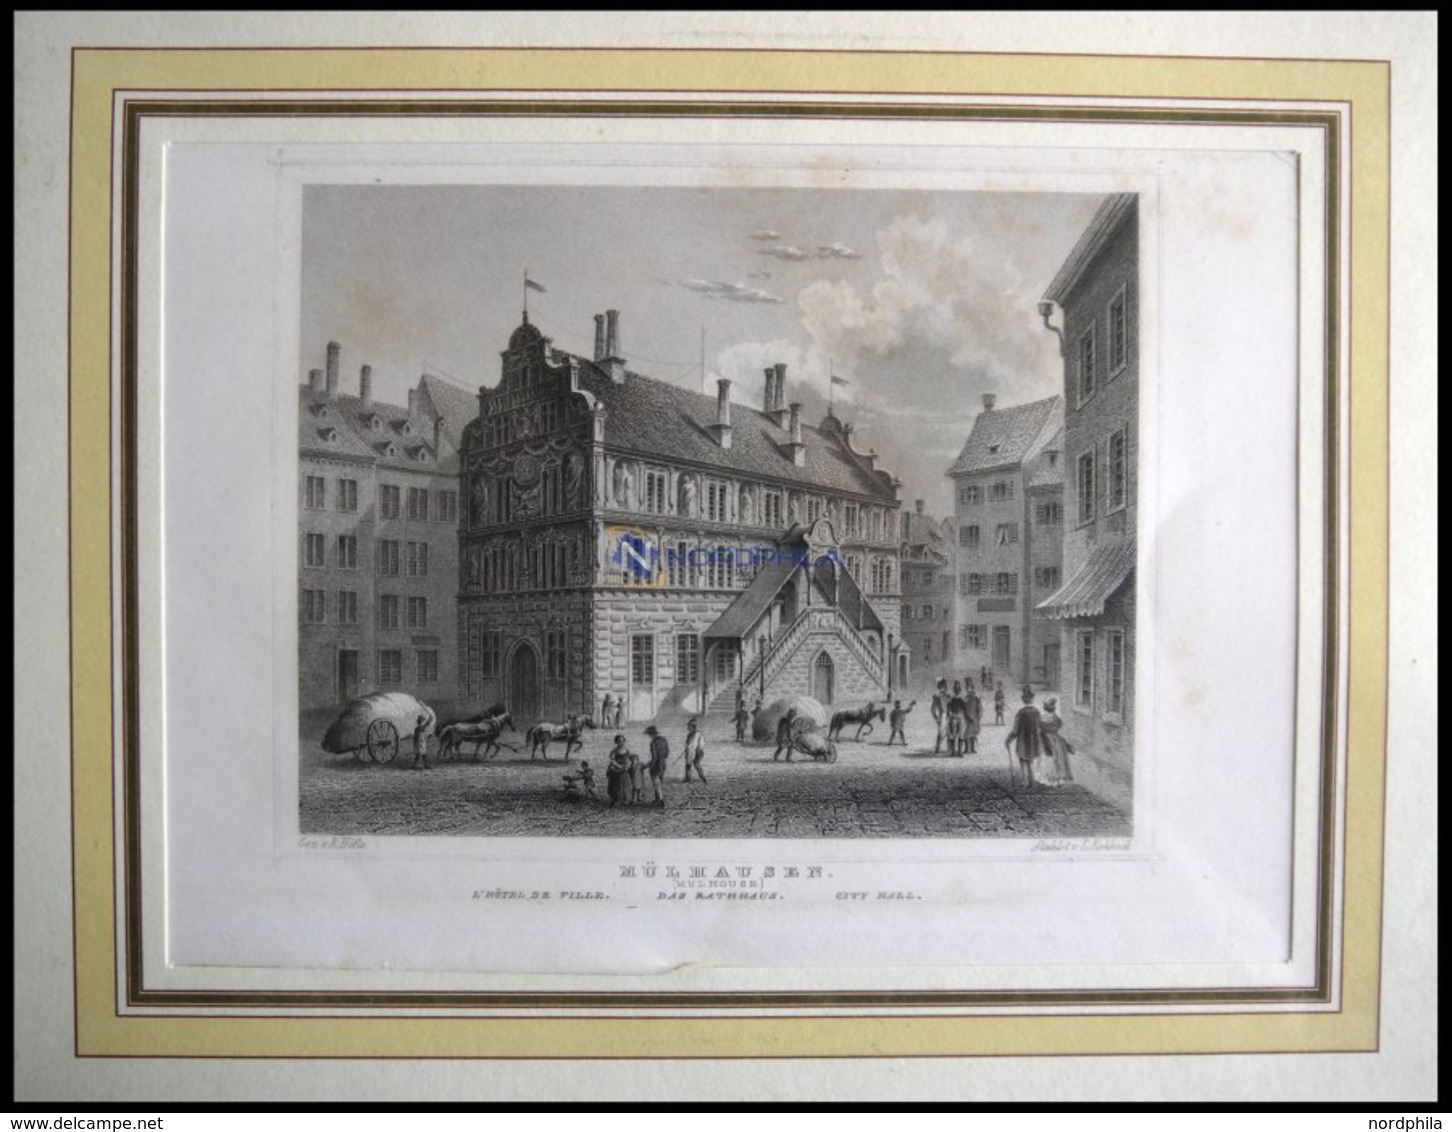 MÜHLHAUSEN: Das Rathaus, Stahlstich Von Höfle/Rohbock Um 1840 - Lithographien